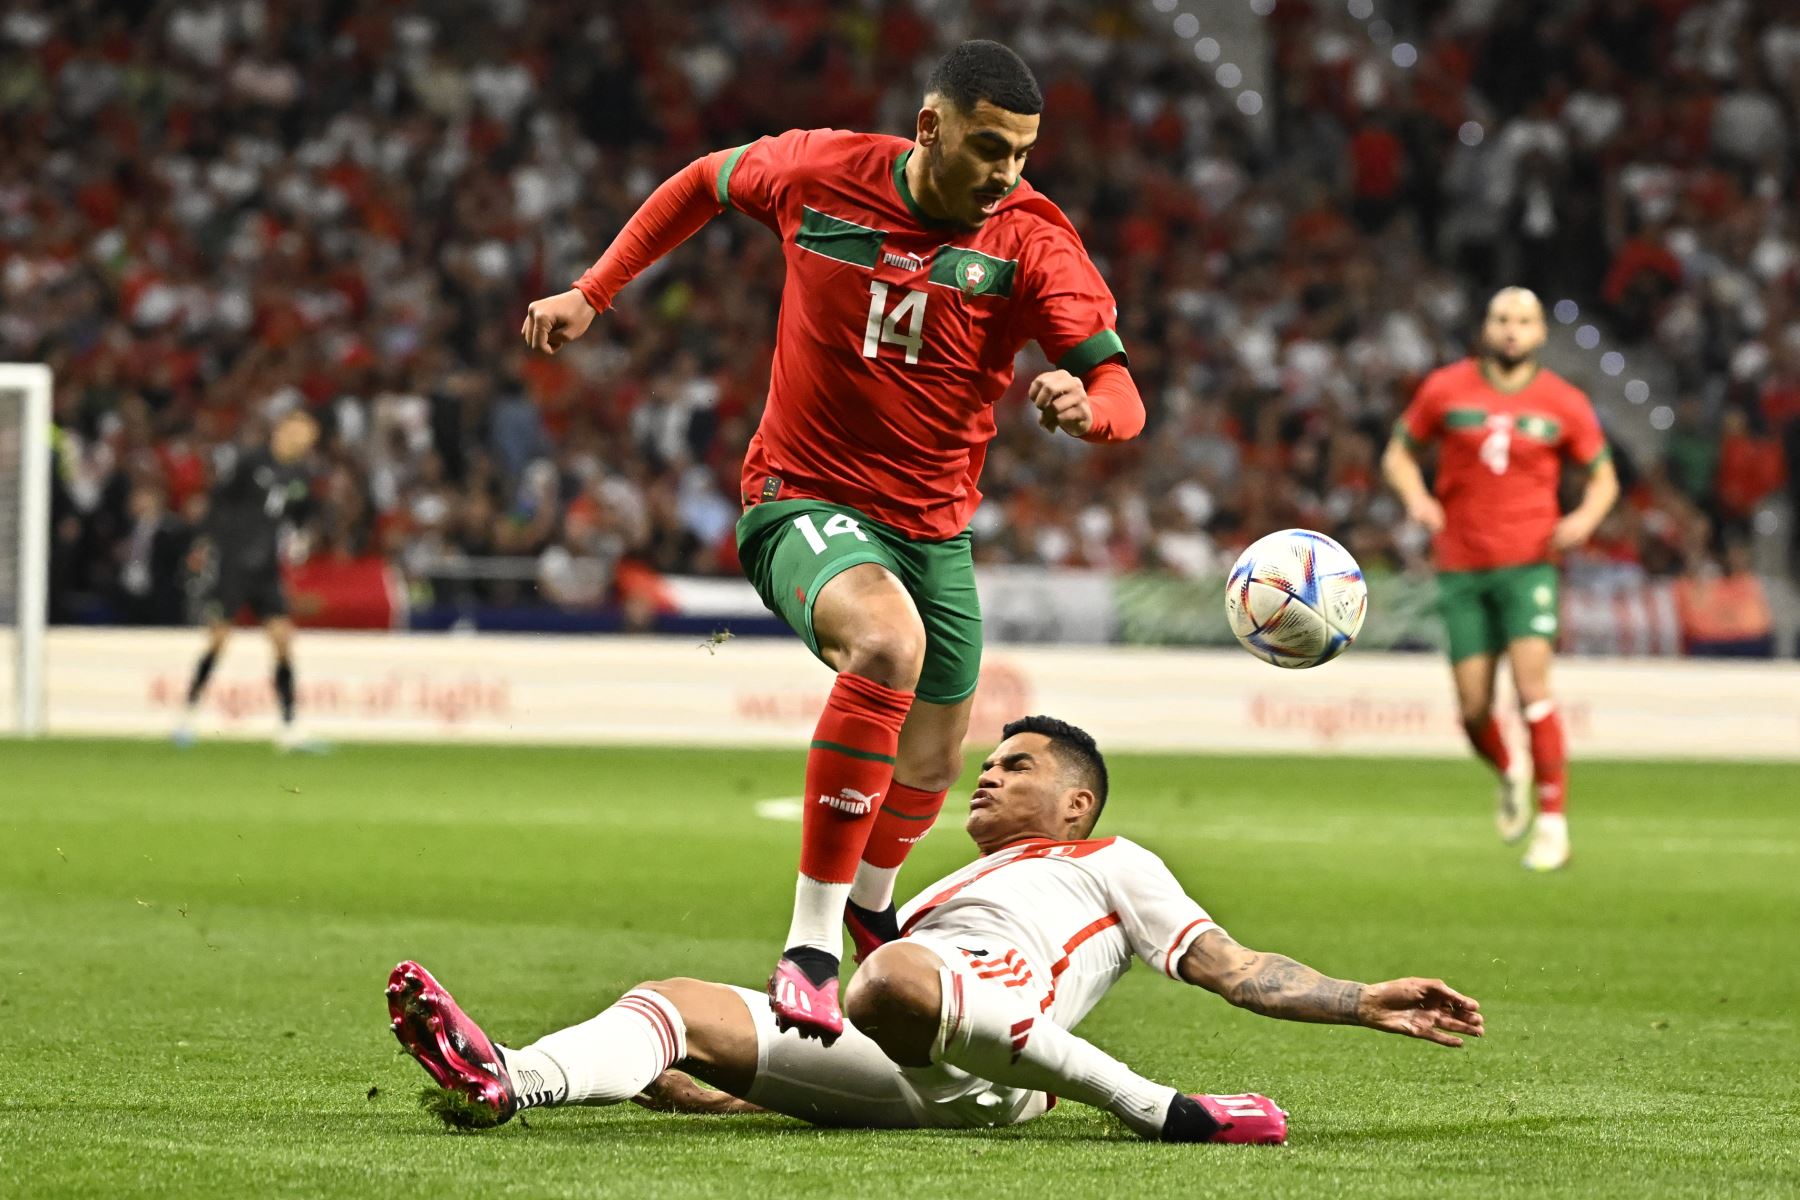 El delantero marroquí Zakaria Aboukhlal compite con el peruano Anderson Santamaría durante el partido amistoso de fútbol entre Marruecos y Perú en el estadio Wanda Metropolitano de Madrid el 28 de marzo de 2023.
Foto: AFP